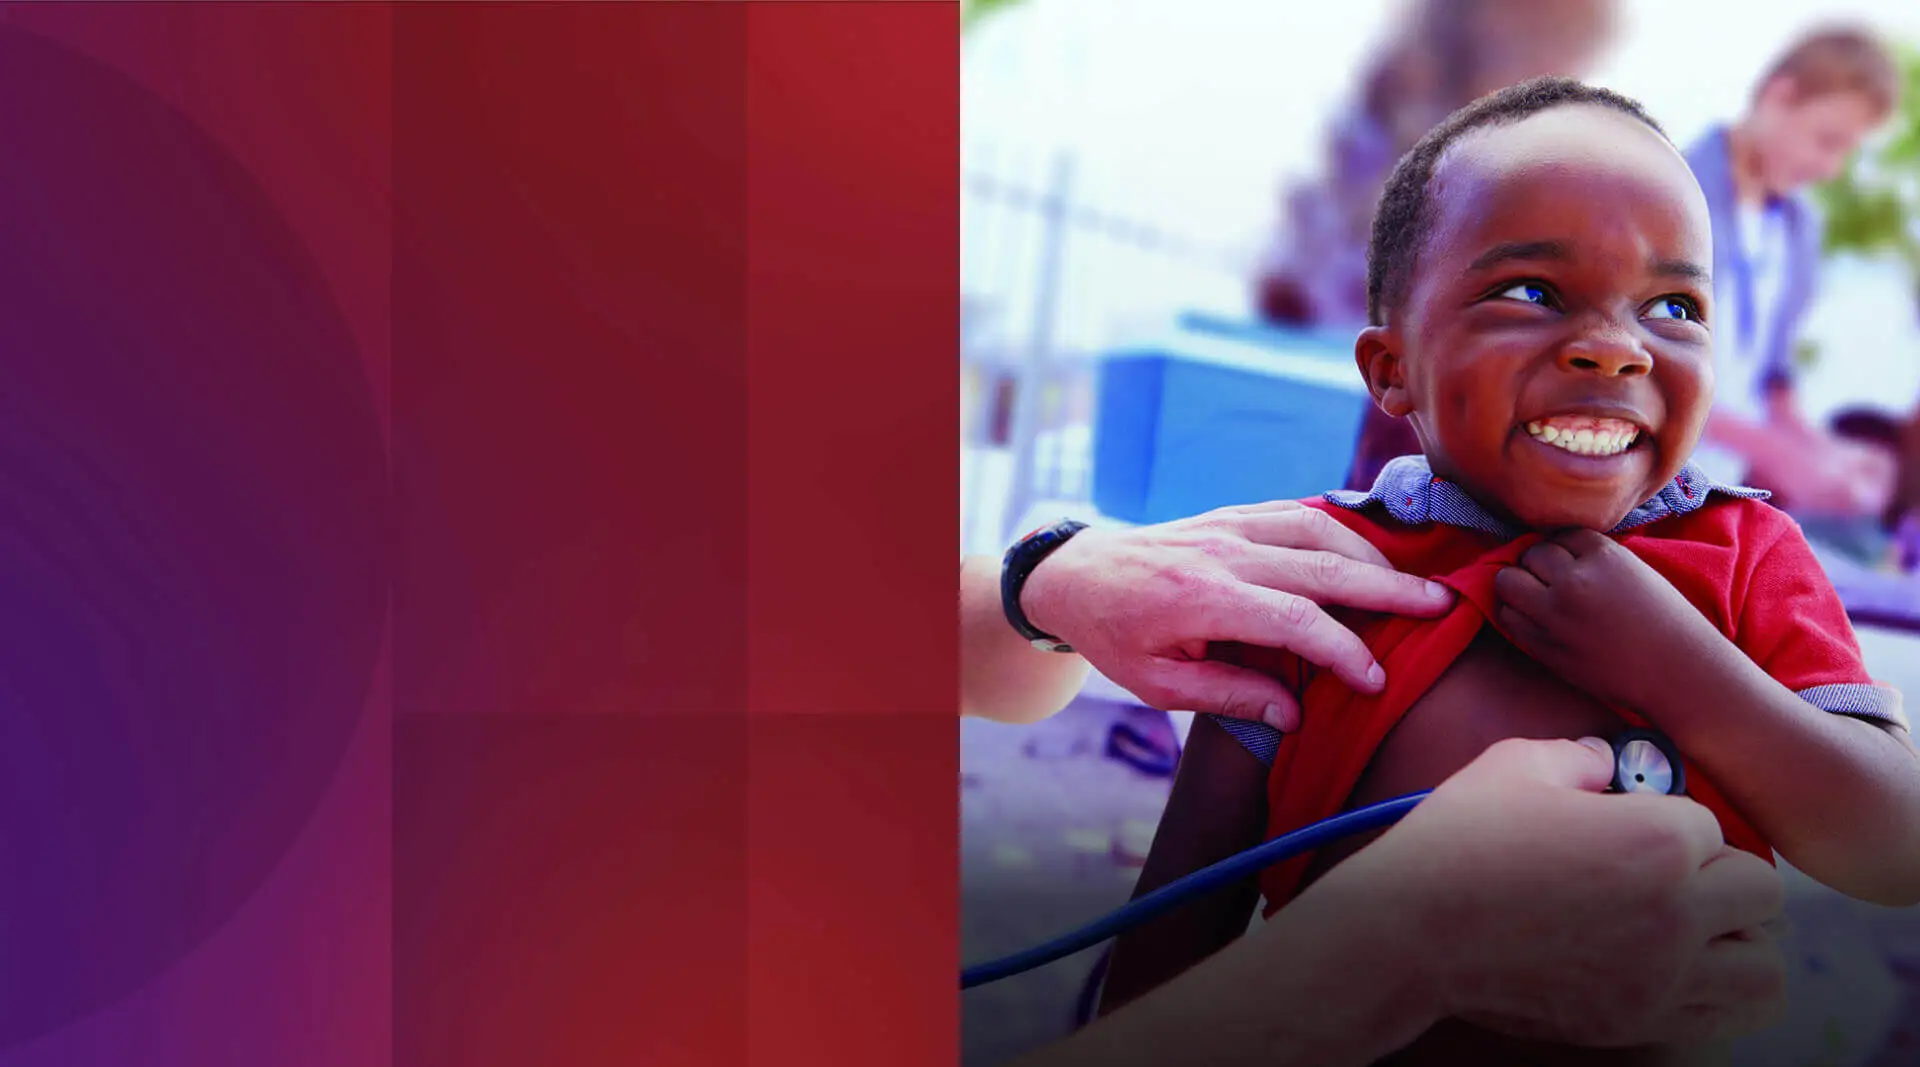 Un enfant noir dans une chemise rouge et bleue sourit joyeusement vers le haut à droite du cadre, comme une paire de mains adultes de la gauche vérifient son rythme cardiaque avec un stéthoscope.